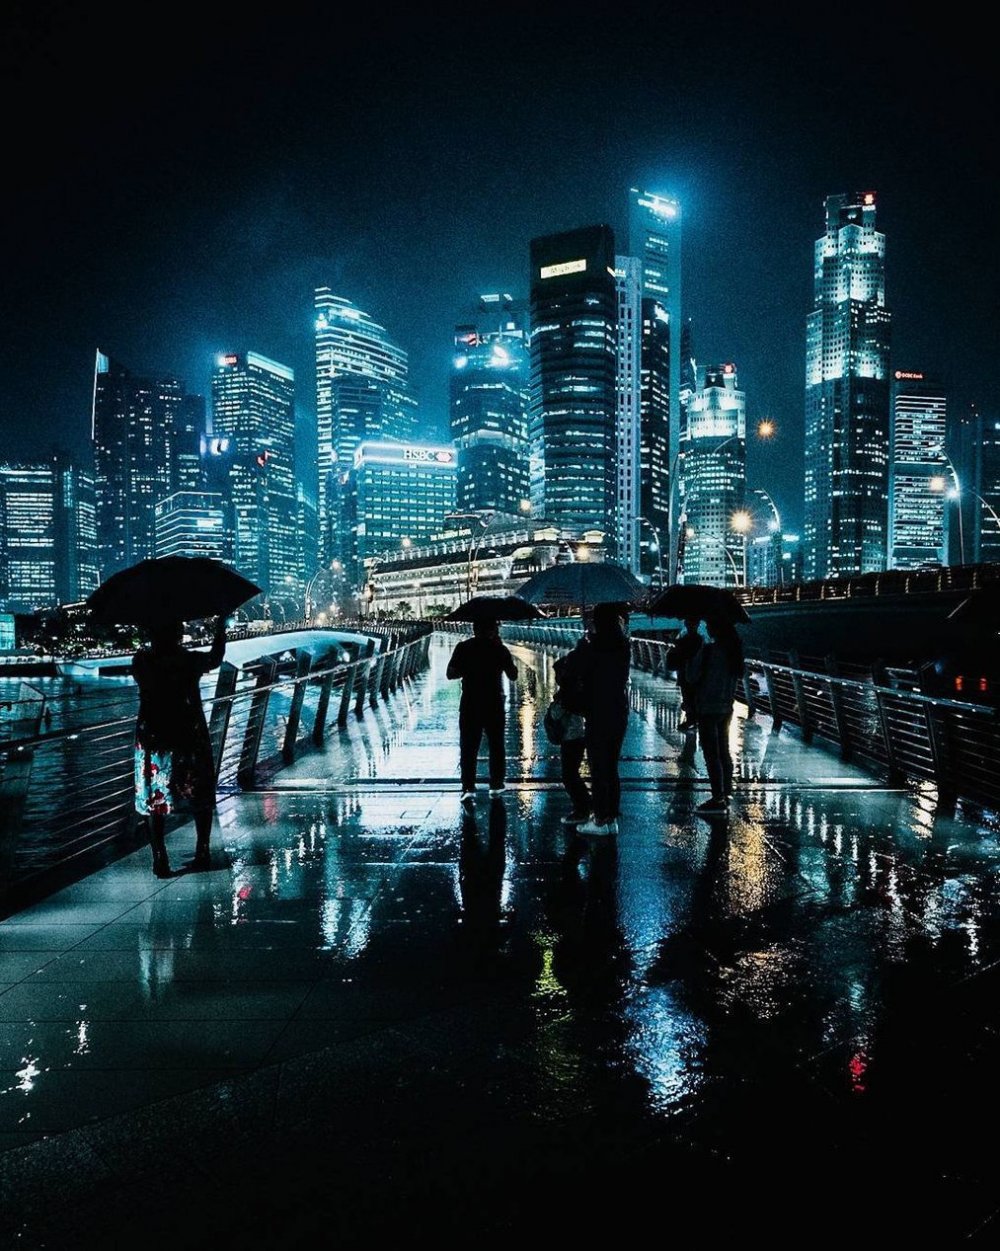 Гонг Конг